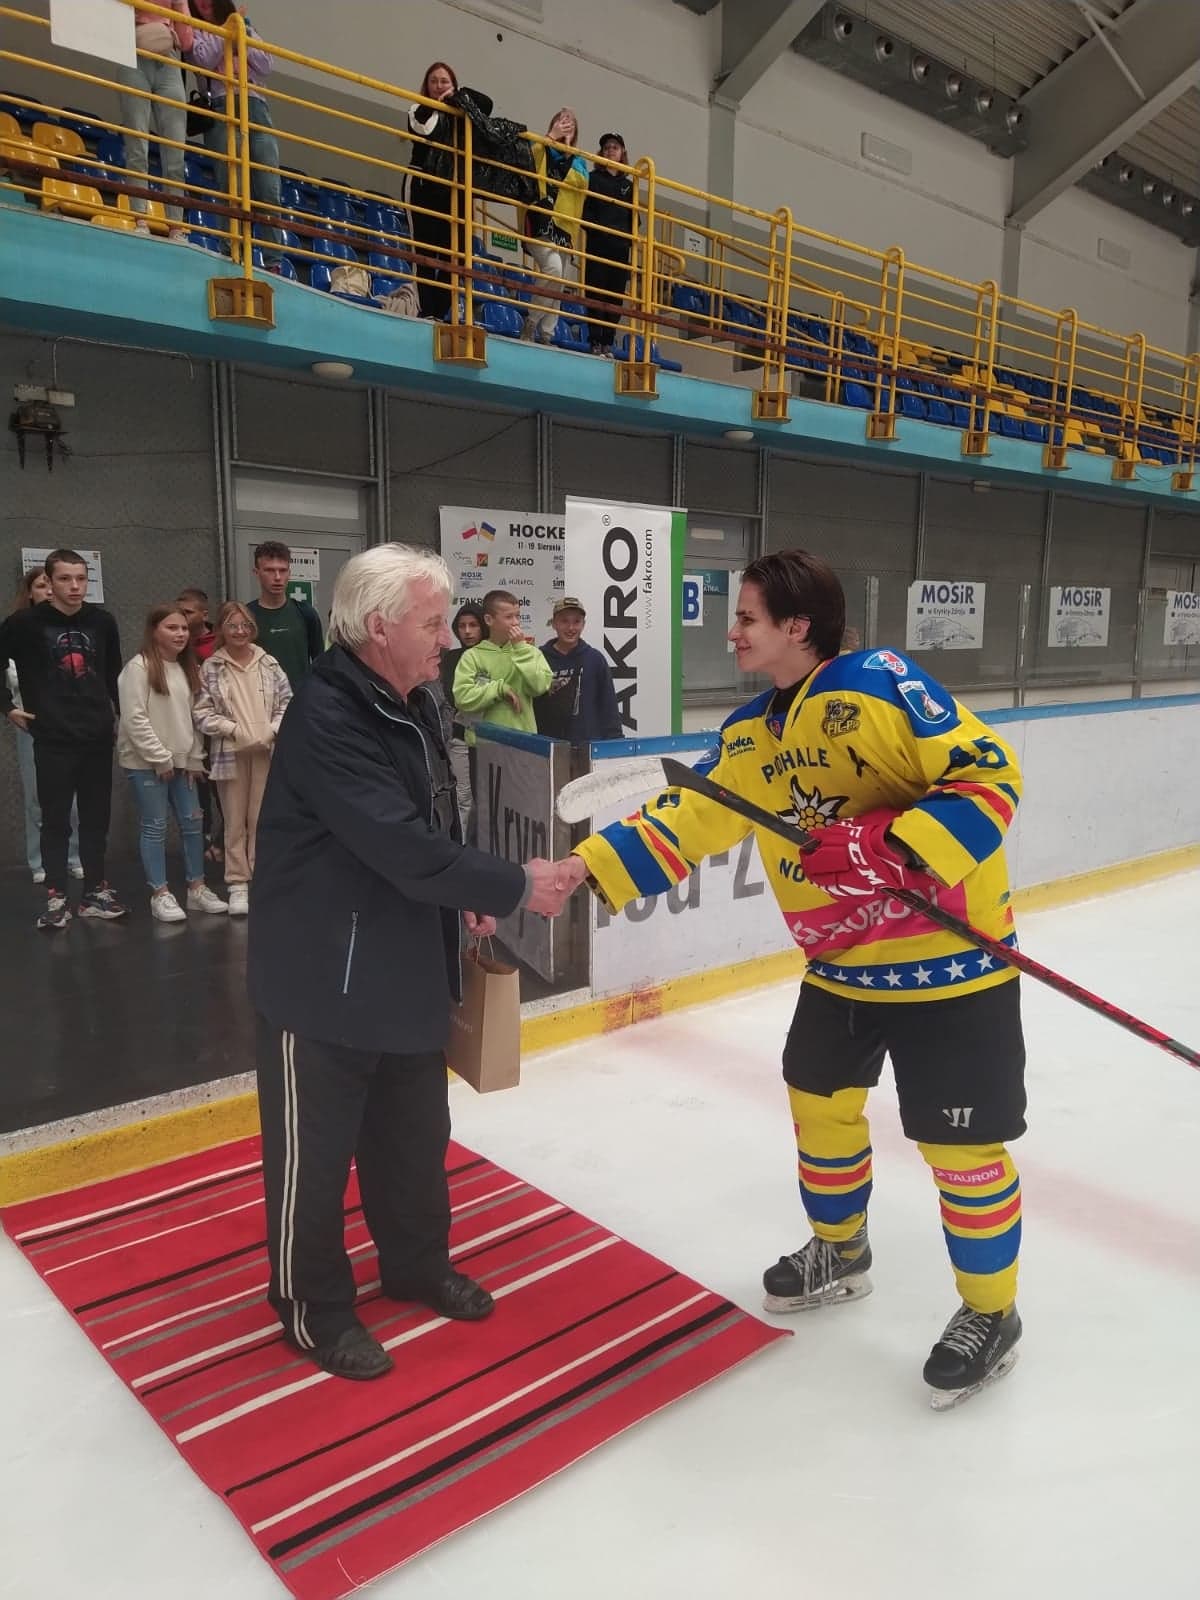 Nagrody wyróżnionym wręczał Jan Adamowicz, od 64 lat związany z krynickim hokejem